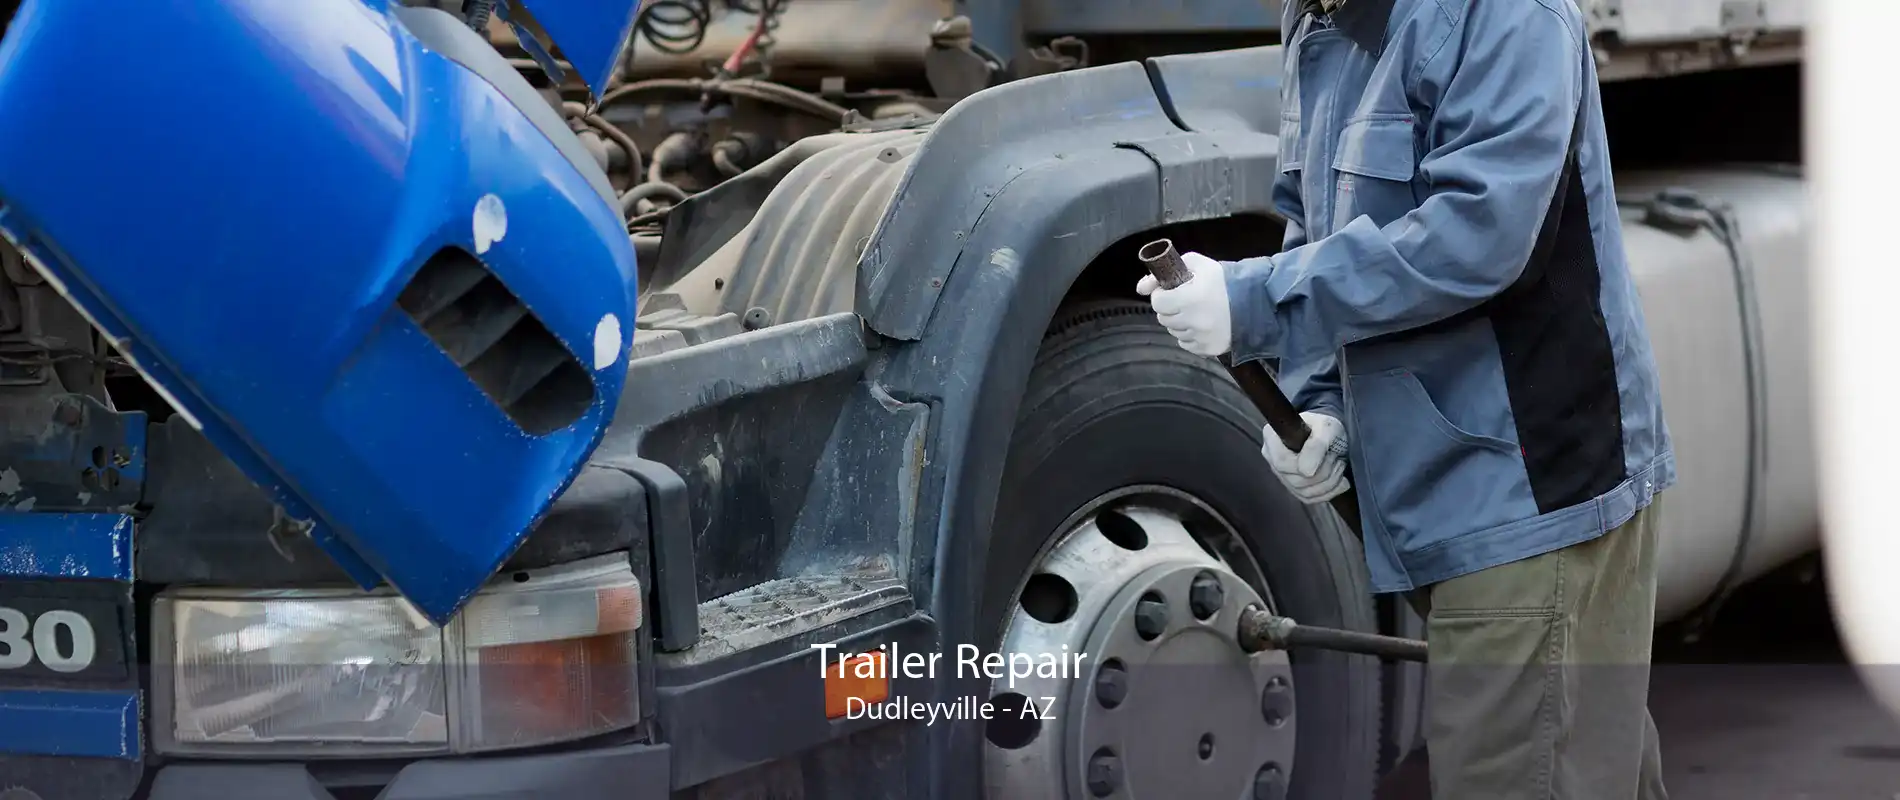 Trailer Repair Dudleyville - AZ